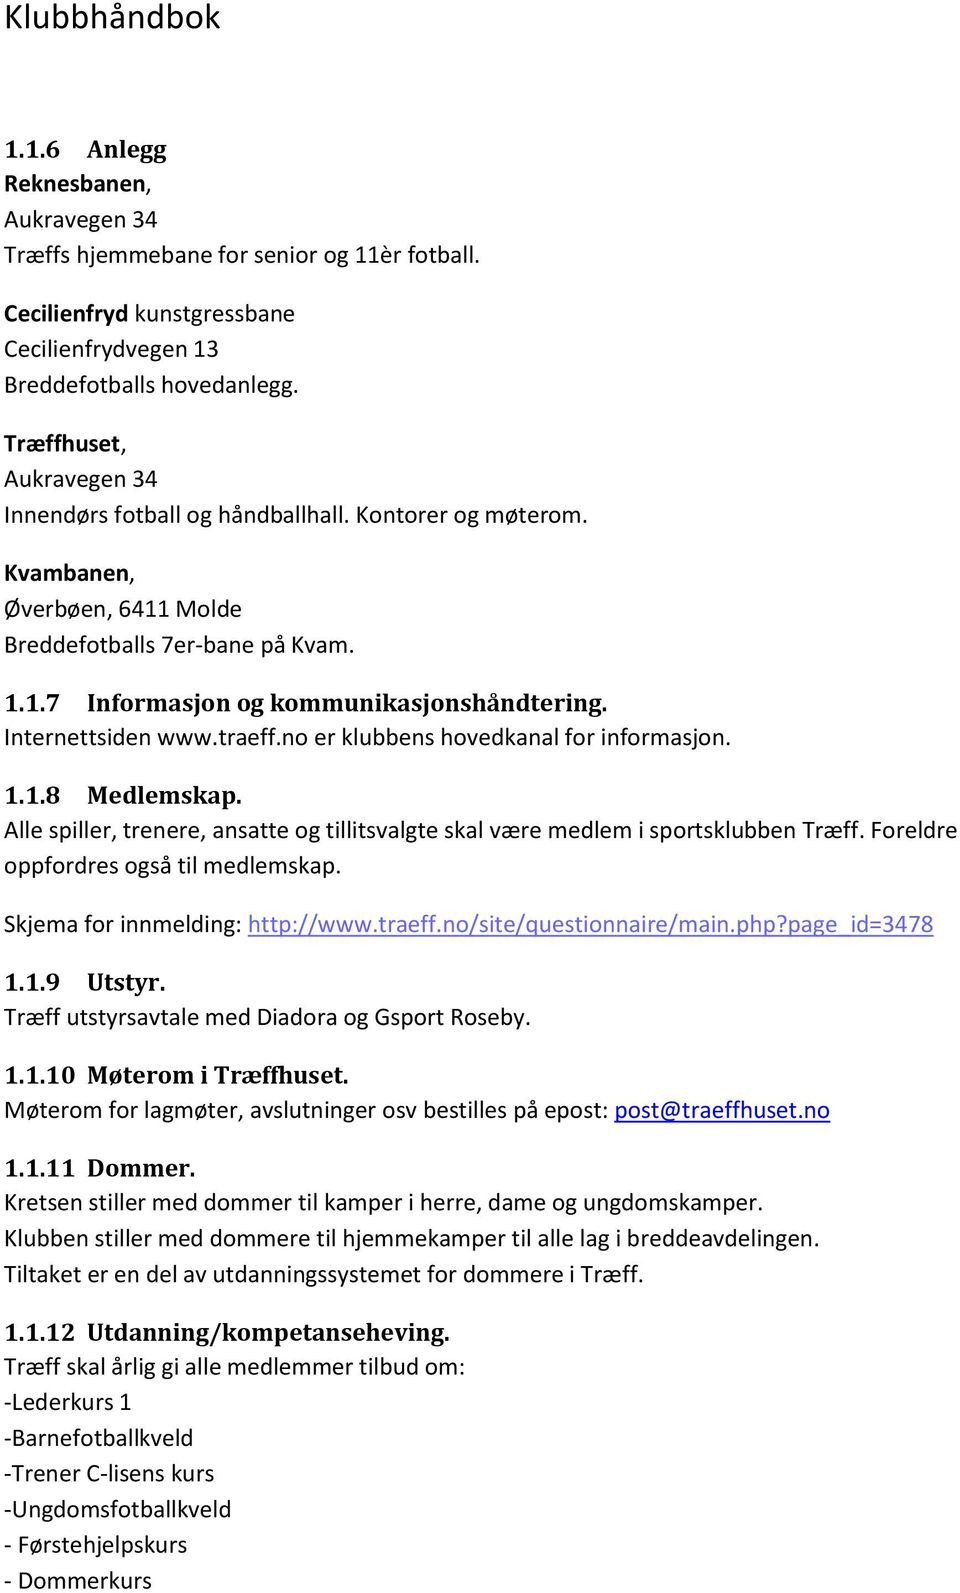 Internettsiden www.traeff.no er klubbens hovedkanal for informasjon. 1.1.8 Medlemskap. Alle spiller, trenere, ansatte og tillitsvalgte skal være medlem i sportsklubben Træff.